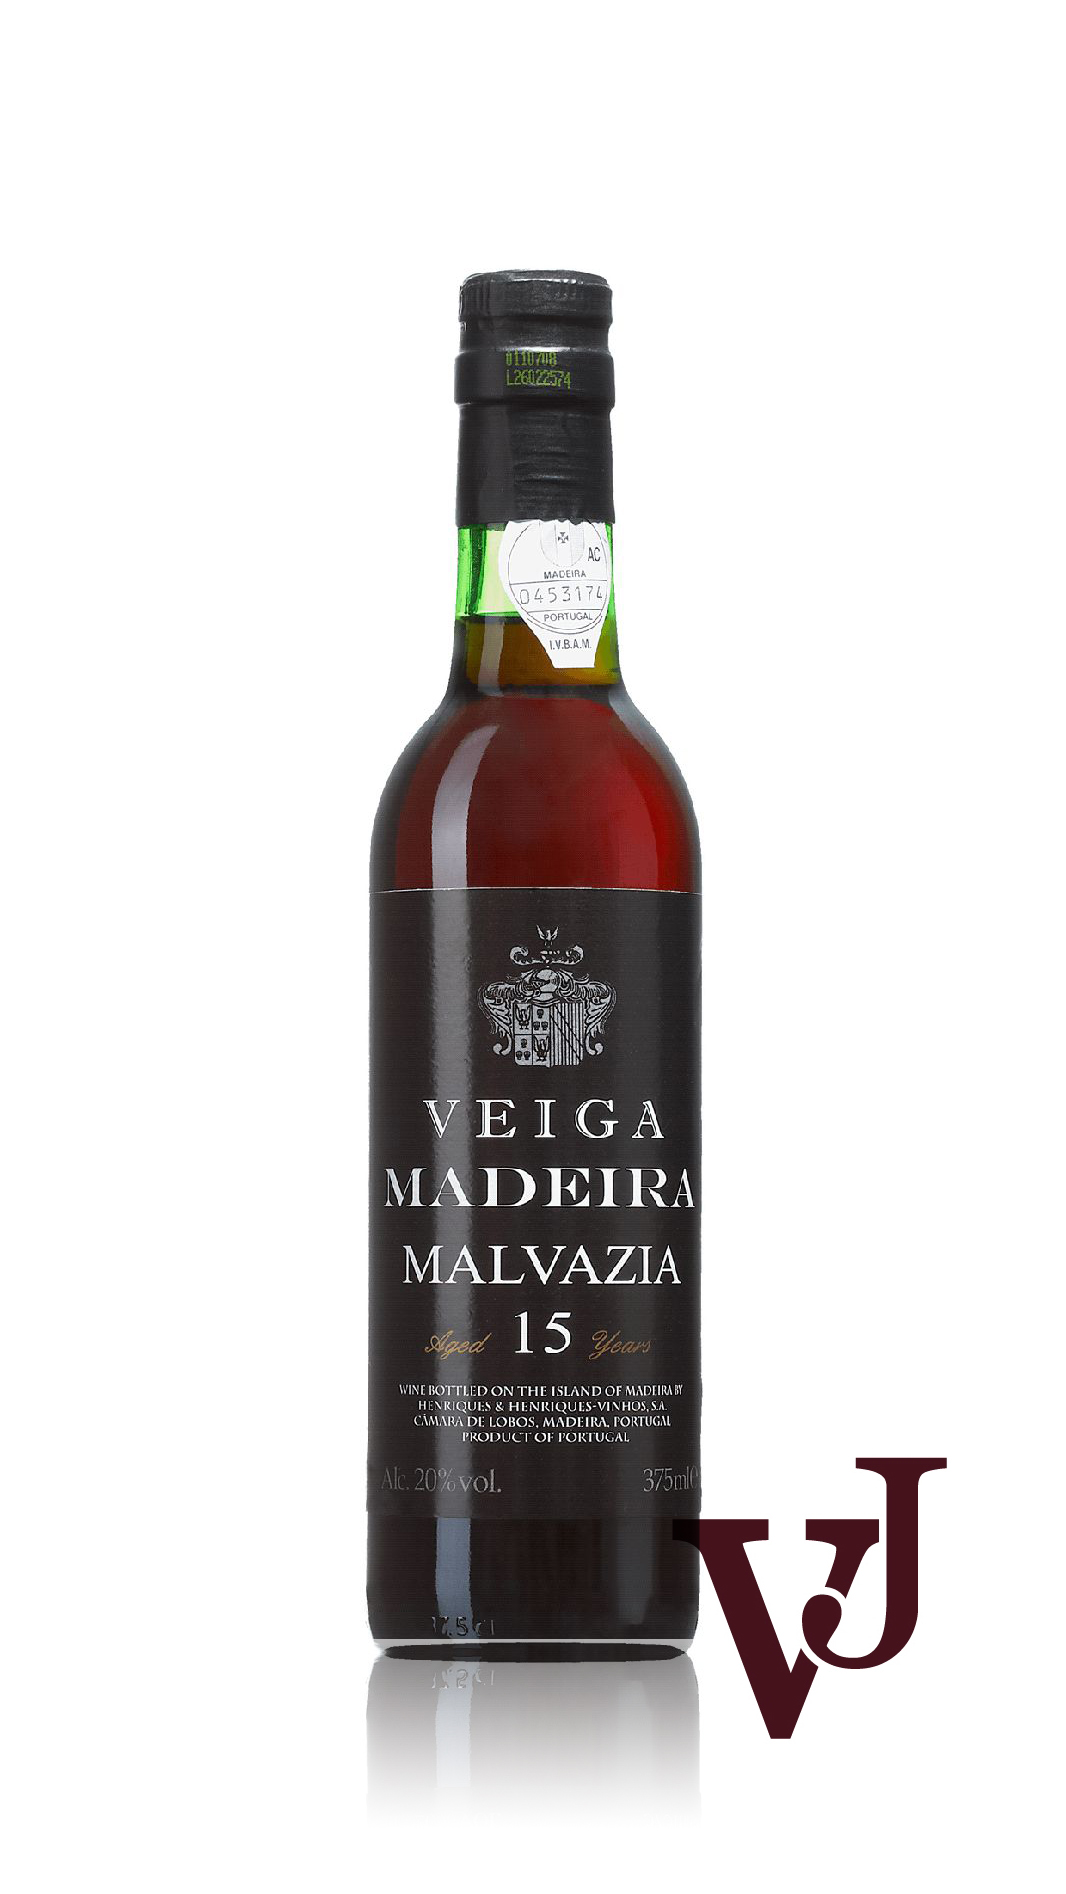 Övrigt vin - Veiga Madeira Malvazia 15 Years artikel nummer 7617502 från producenten Henriques & Henriques från området Portugal